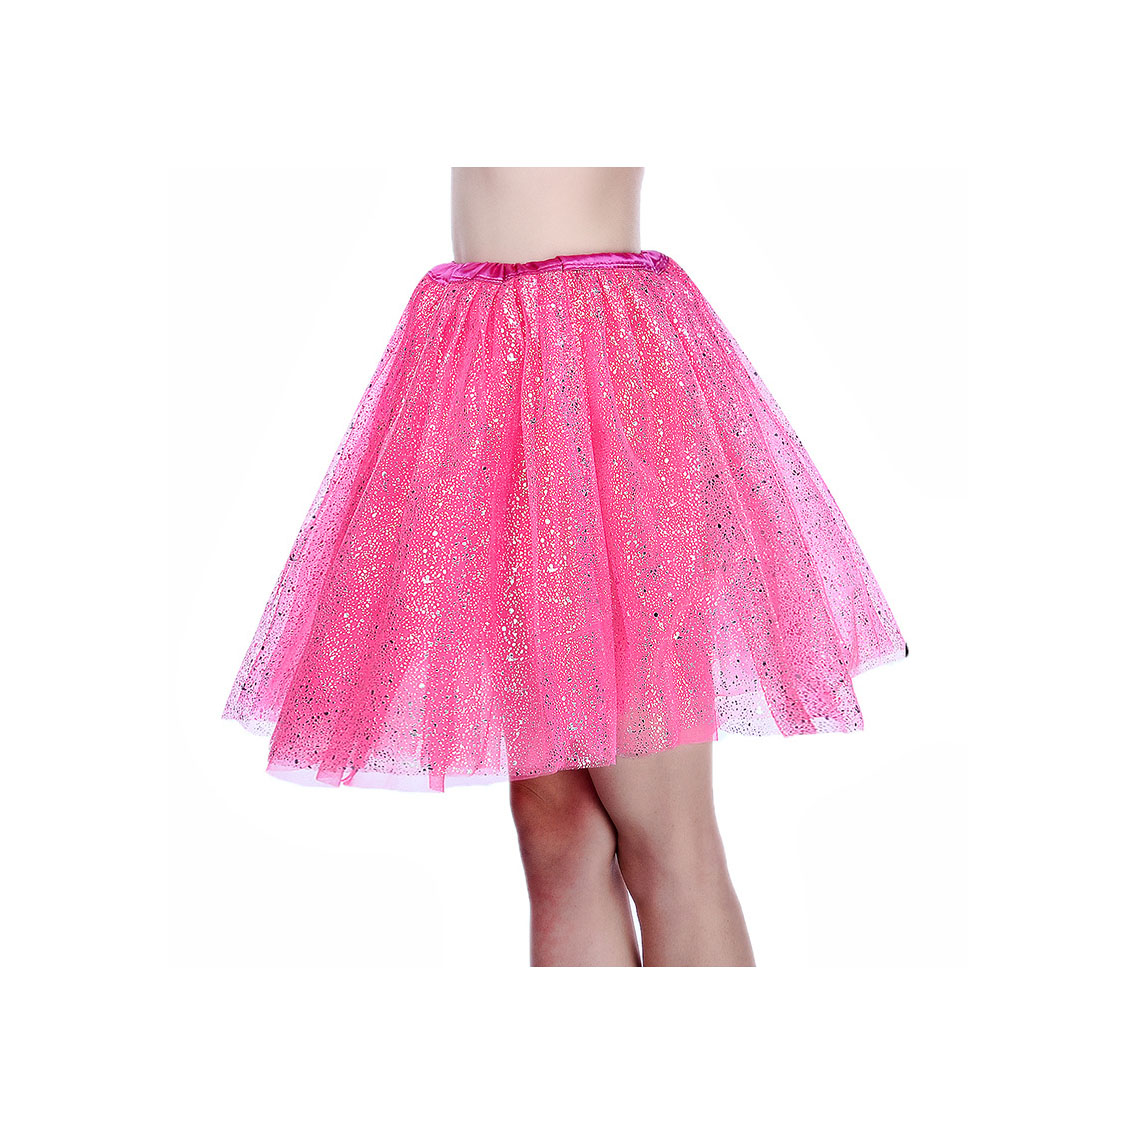 Adult Tutu Skirt Sequin Gilding Polka Dot 3 Layers Party Dance Ballet Pettiskirt Tulle Girl Mini Skirt hot pink